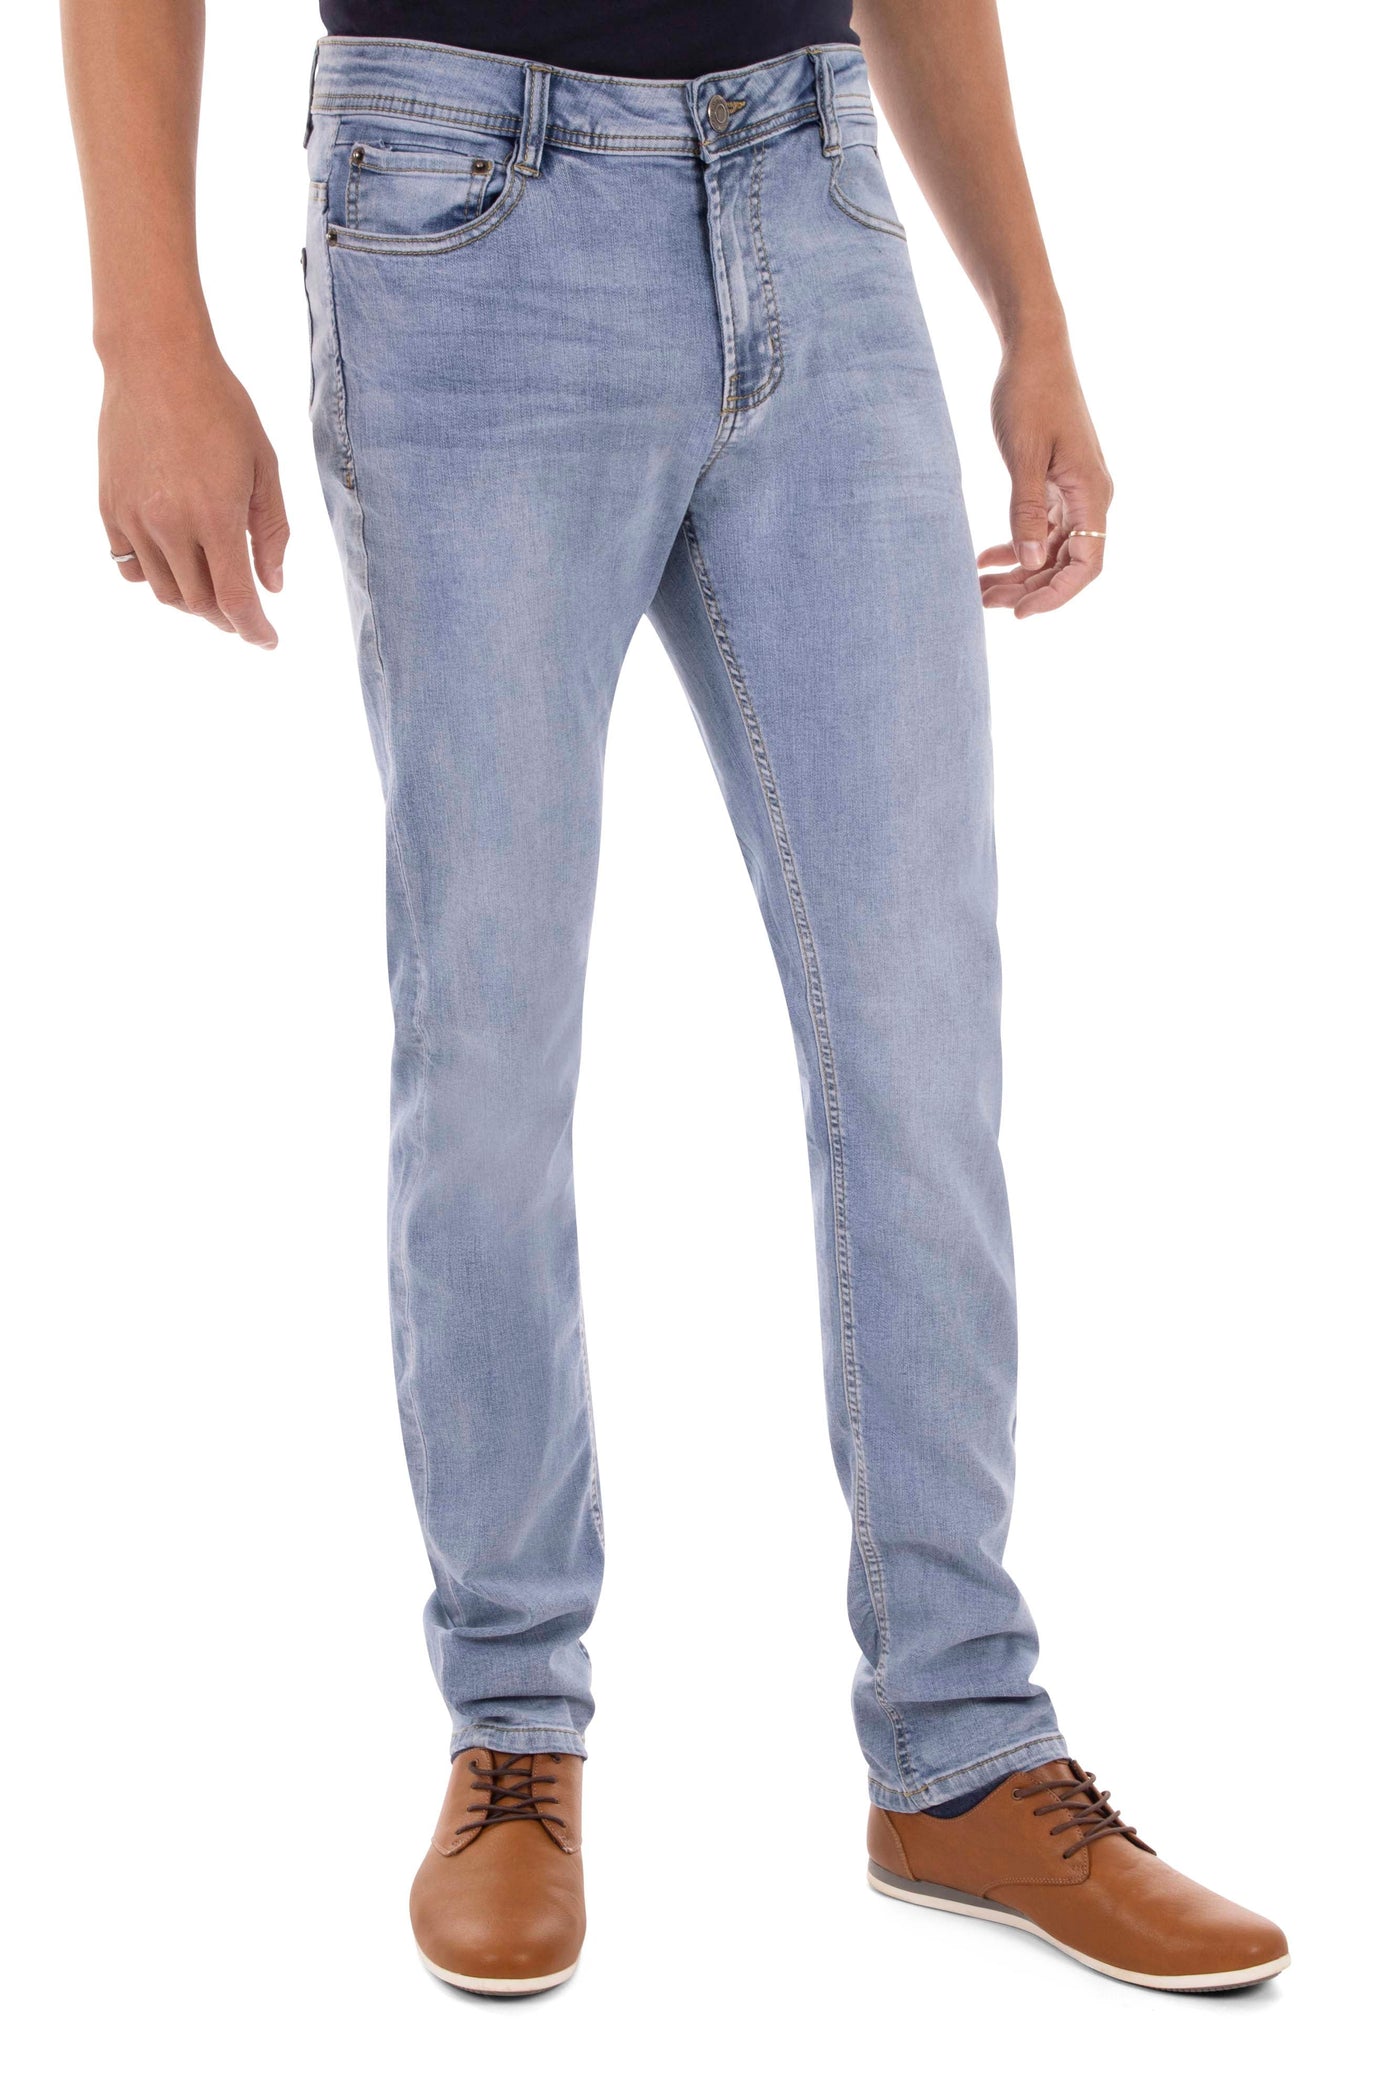 REPREVE polyester regular waist skinny jeans